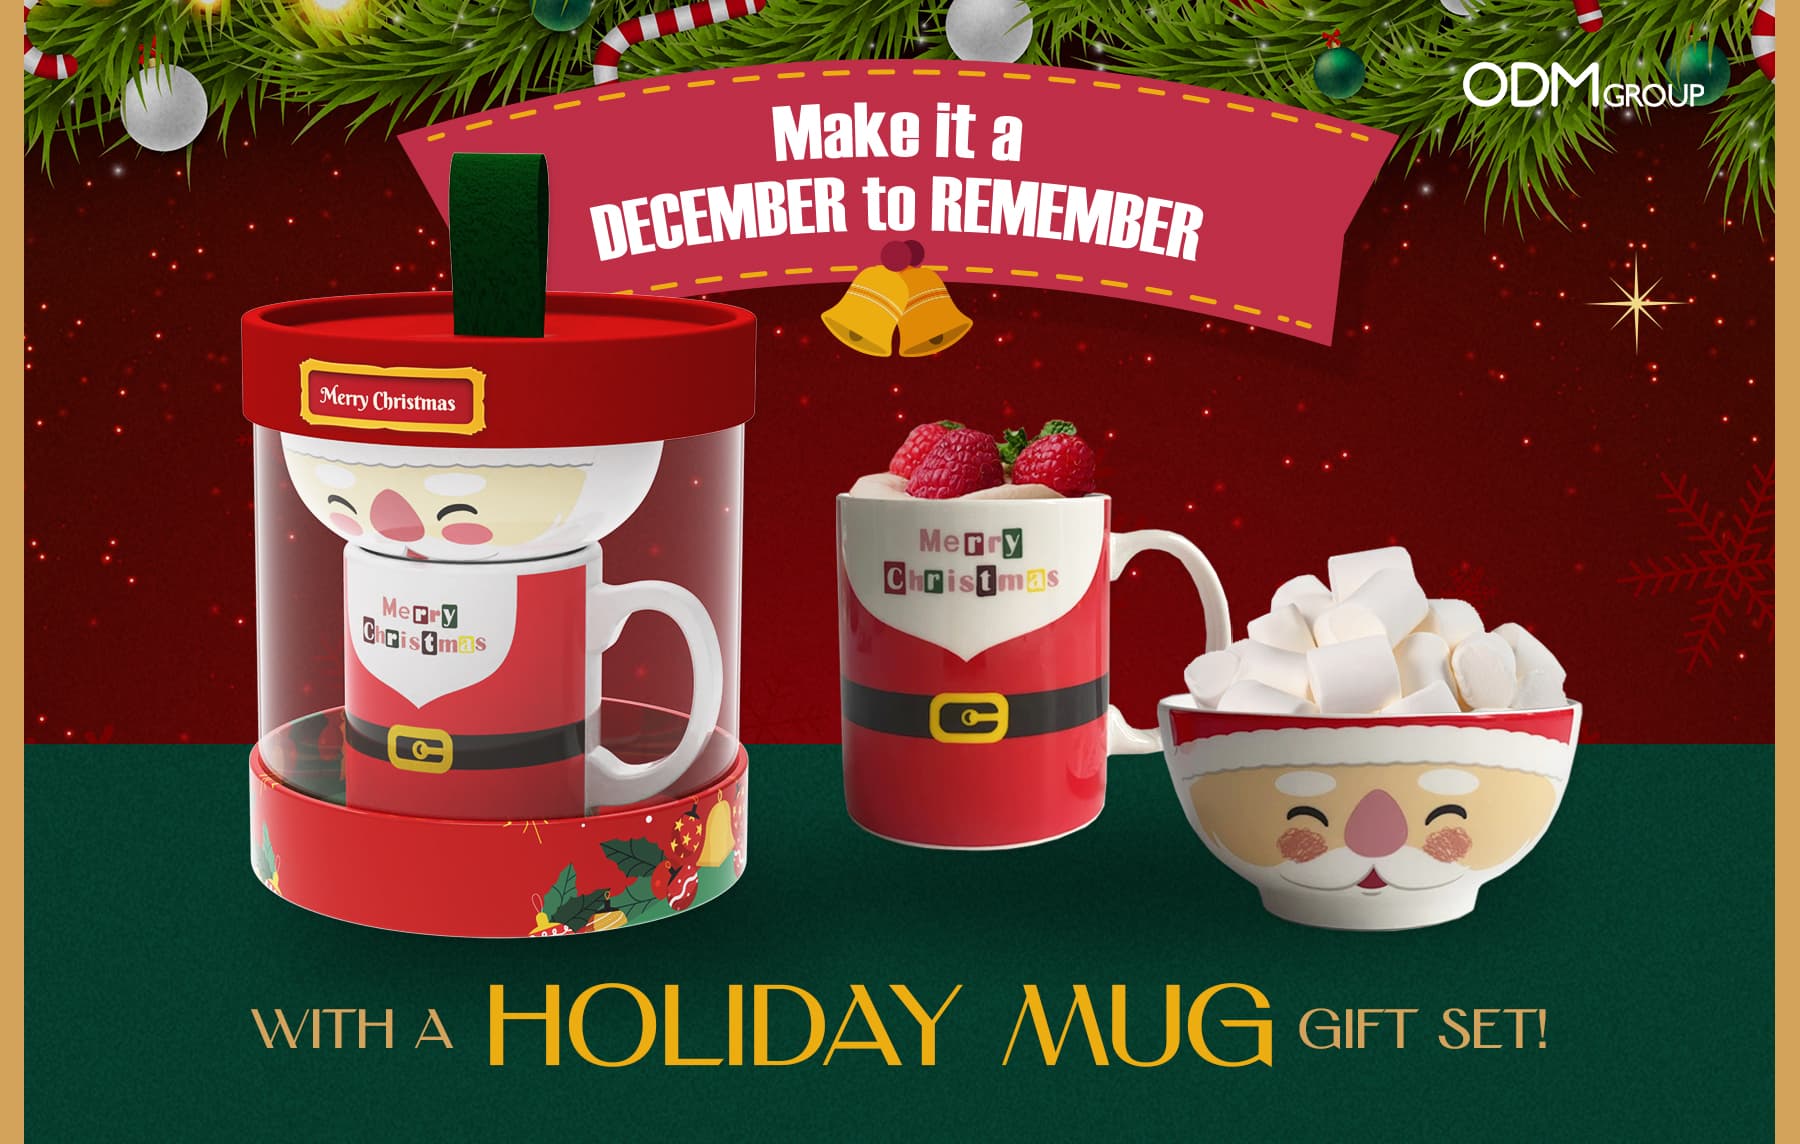 Christmas-themed holiday mug gift set with Santa design, the corporate christmas gift ideas